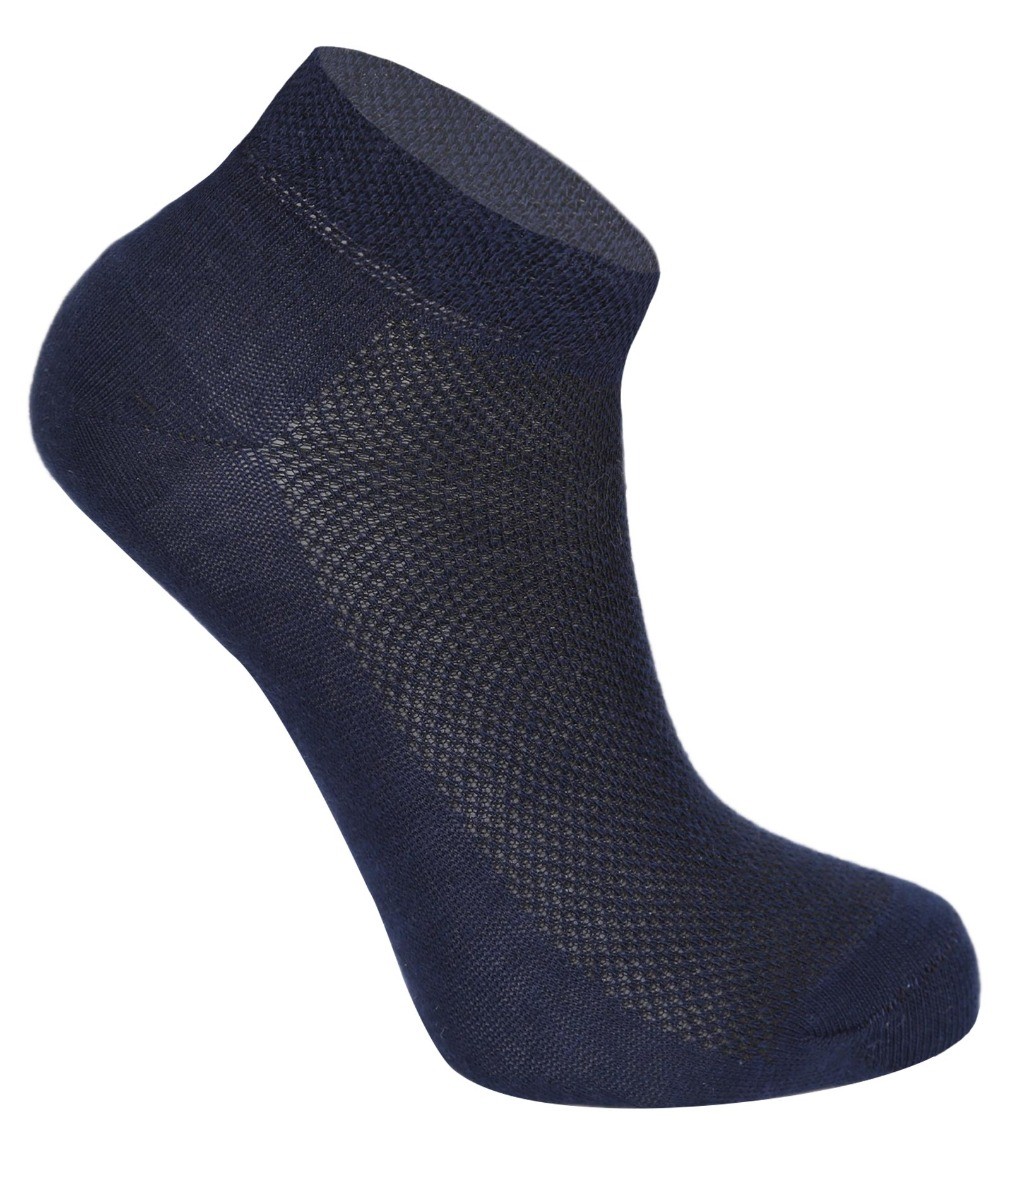 Chaussettes de cheville en coton extensible unisexe, pour garçons & filles - Bleu marine